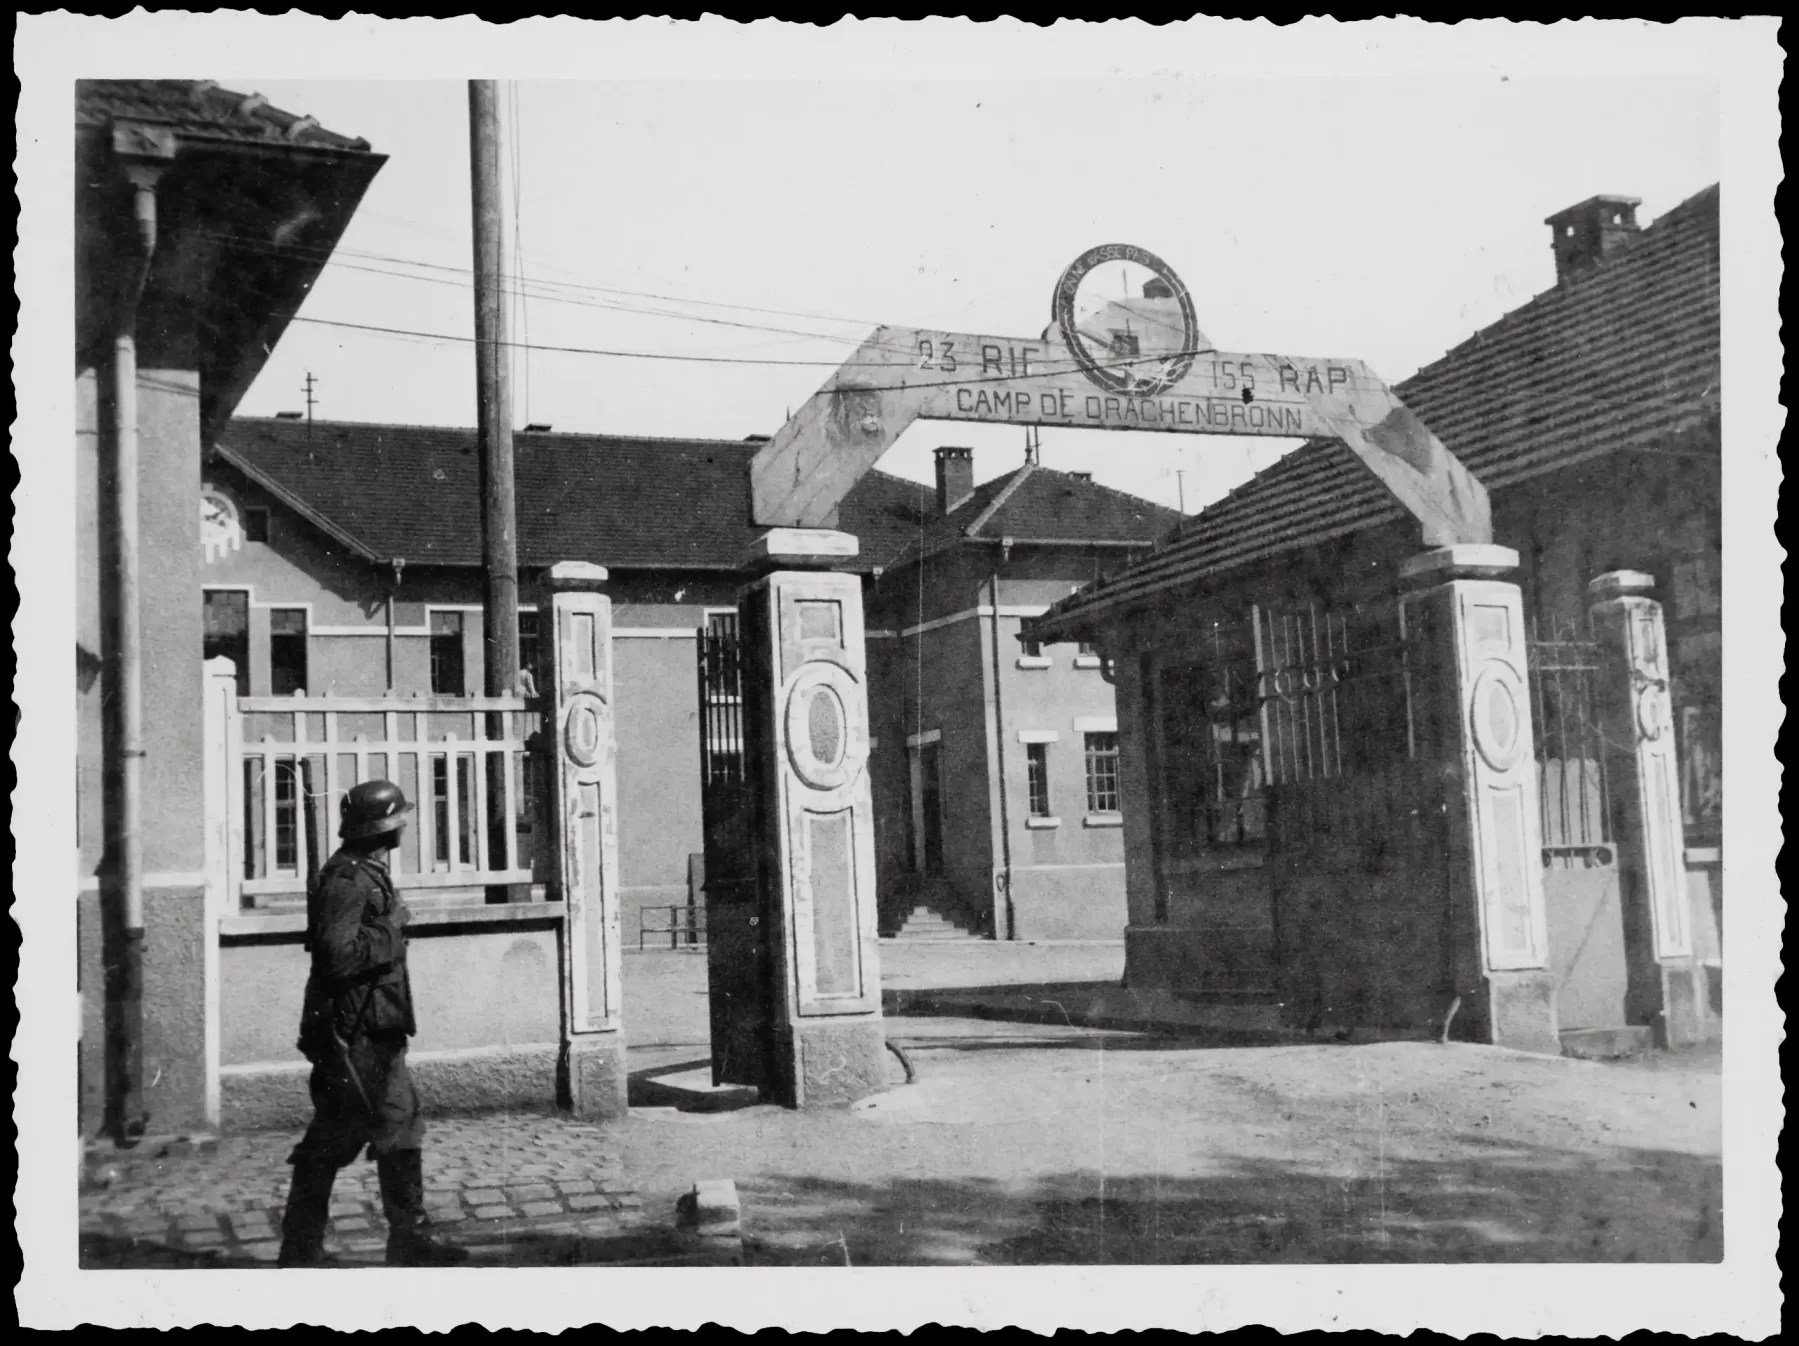 Ligne Maginot - DRACHENBRONN - (Camp de sureté) - Photo issue du carnet de voyage du trésorier payeur allemand
L'entrée du camp de sureté